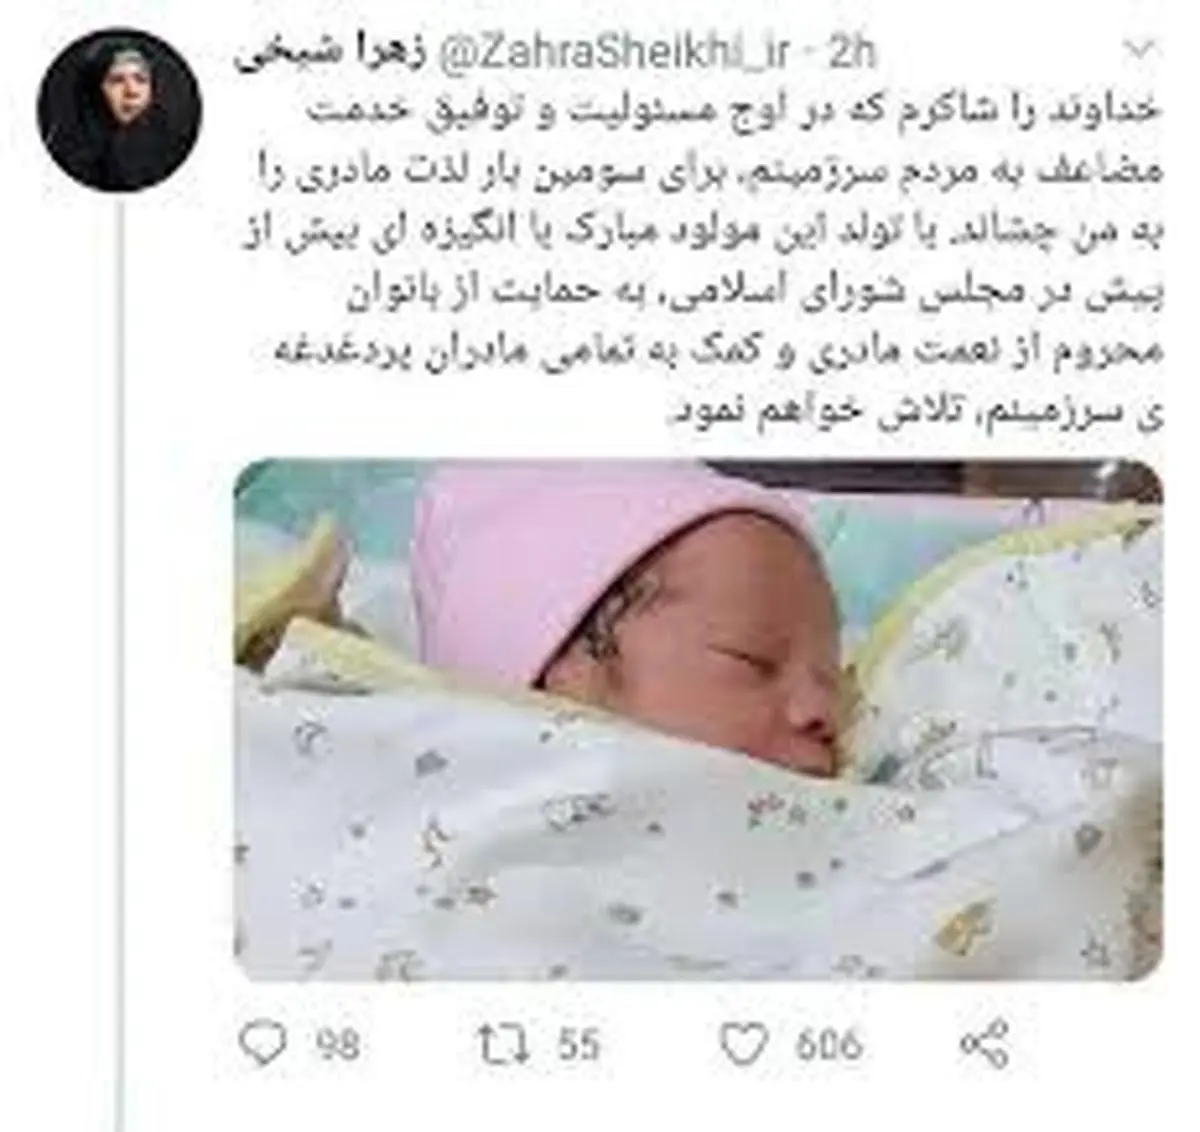  نماینده مجلس | زایمان زهرا شیخی، نماینده اصفهان جنجالی شد